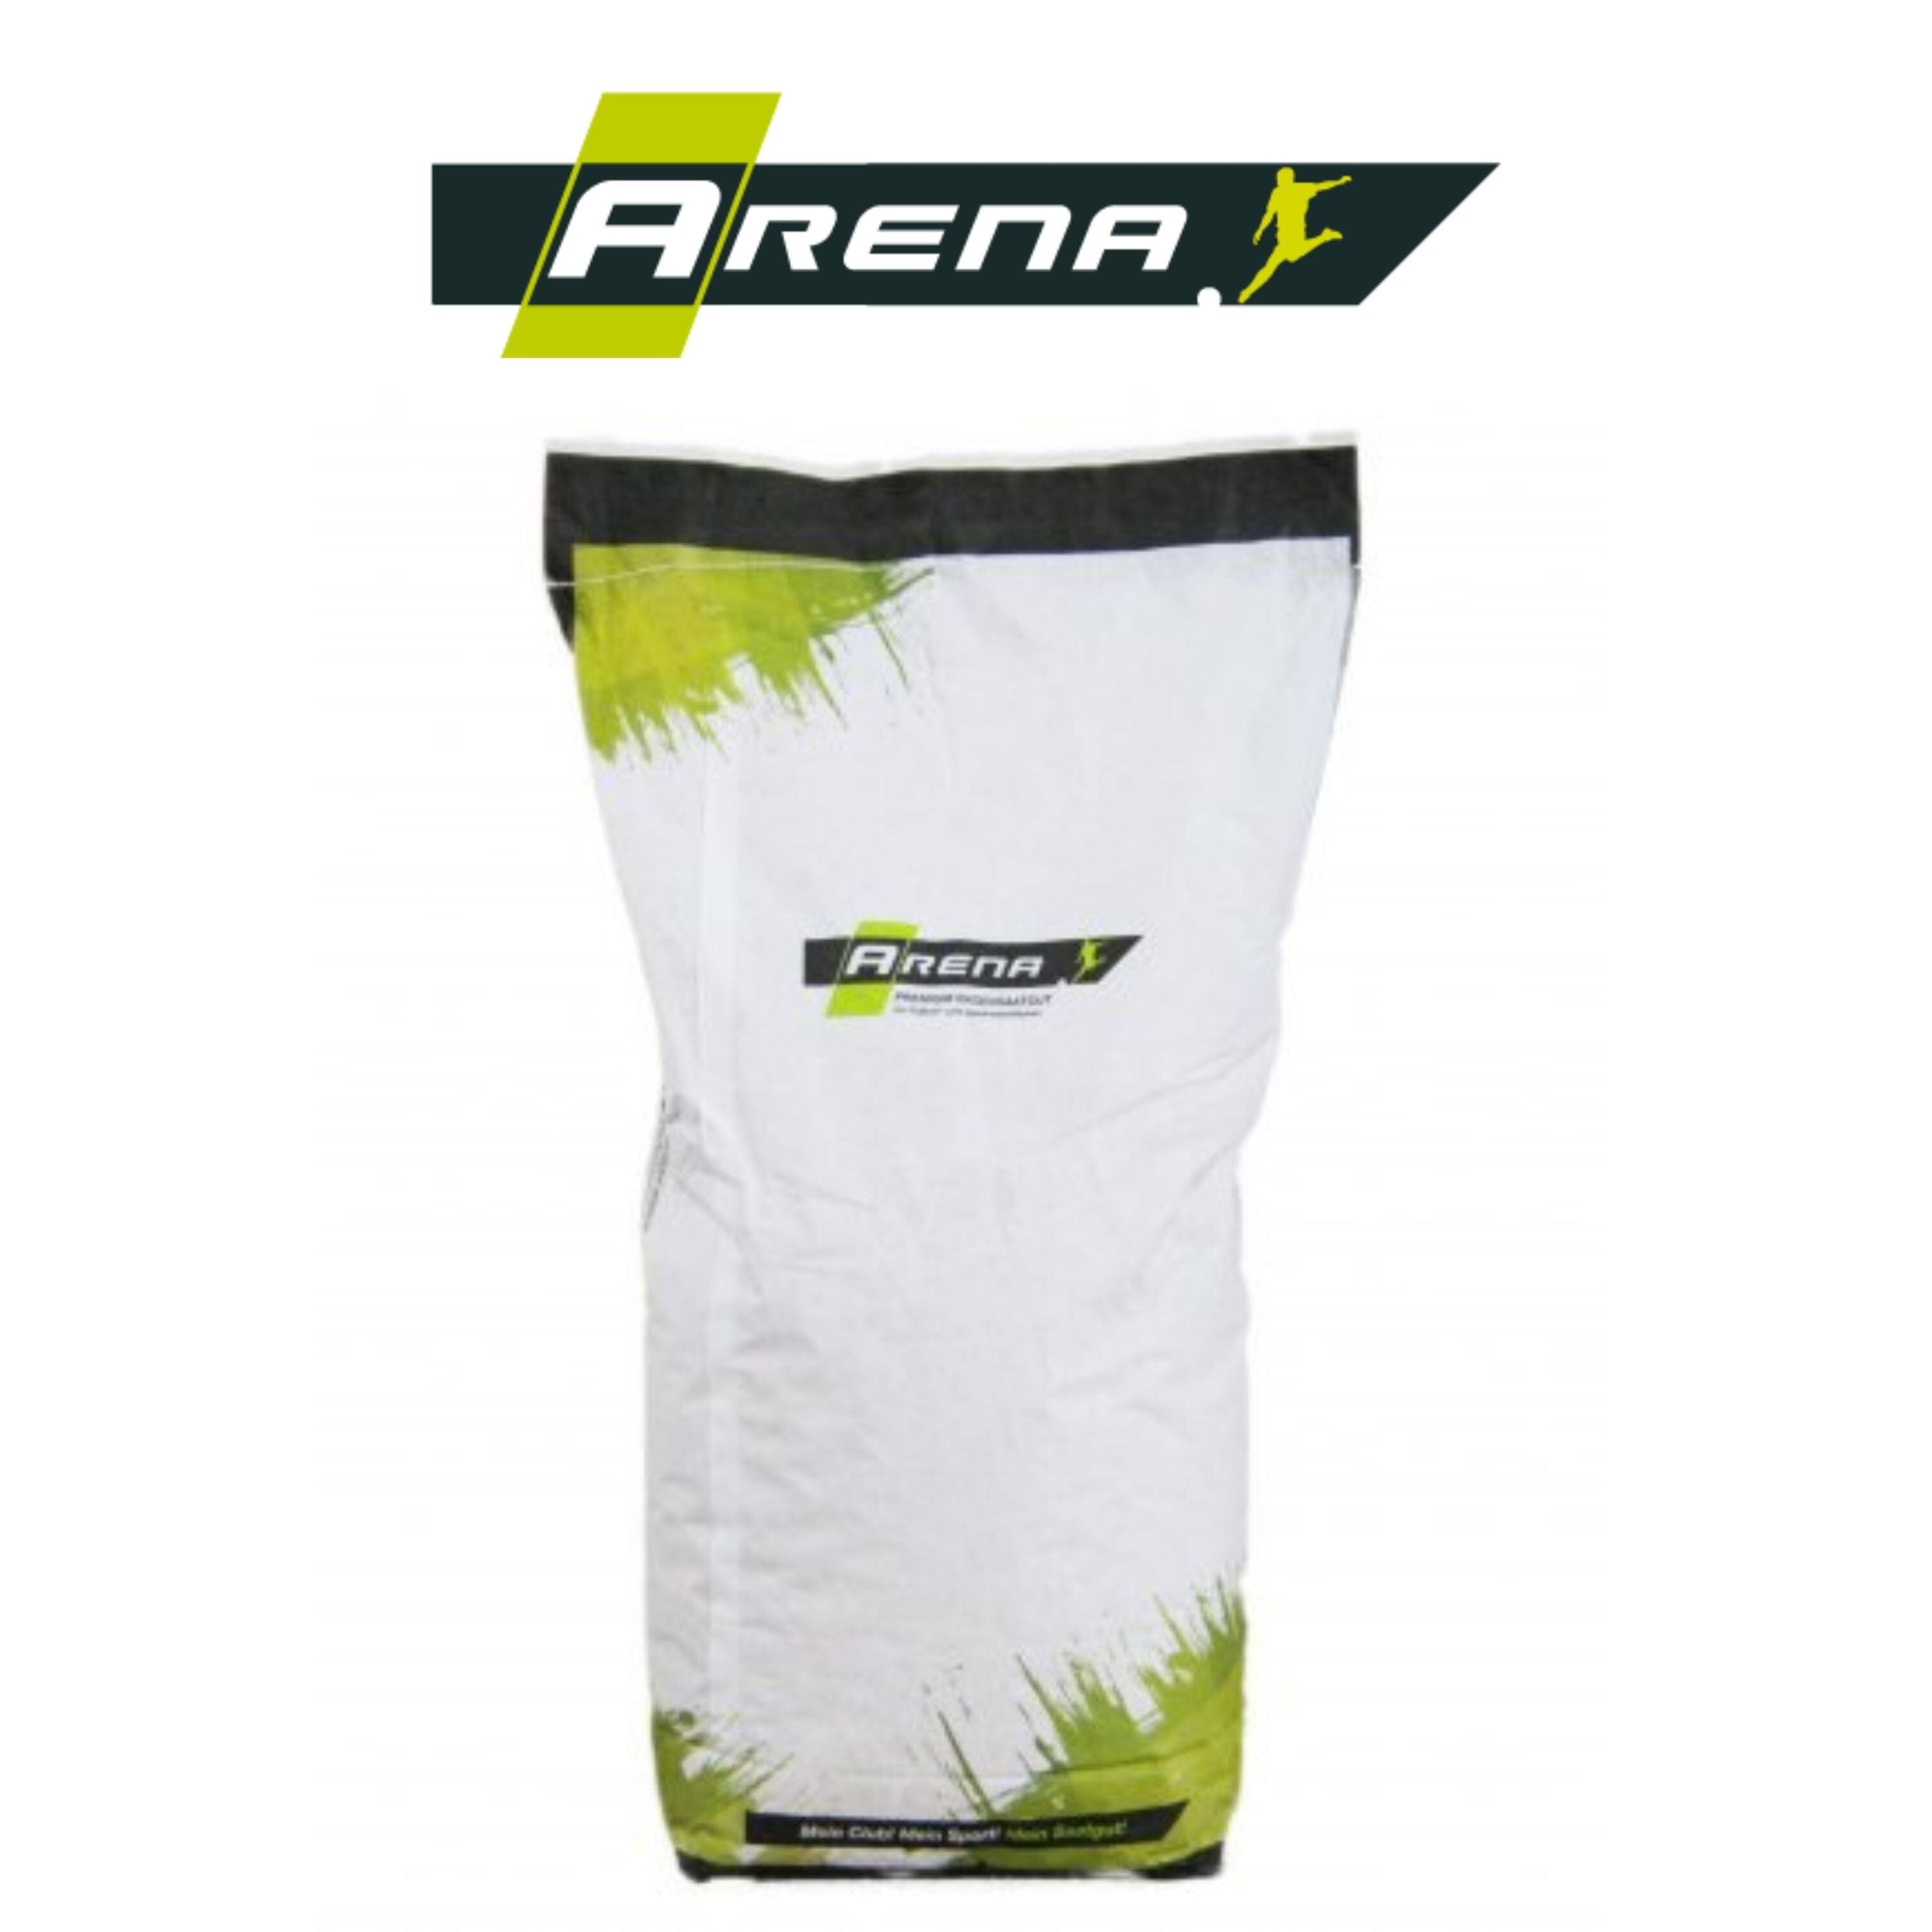 ARENA Gras Supreme RSM 2.3 10kg ARENA